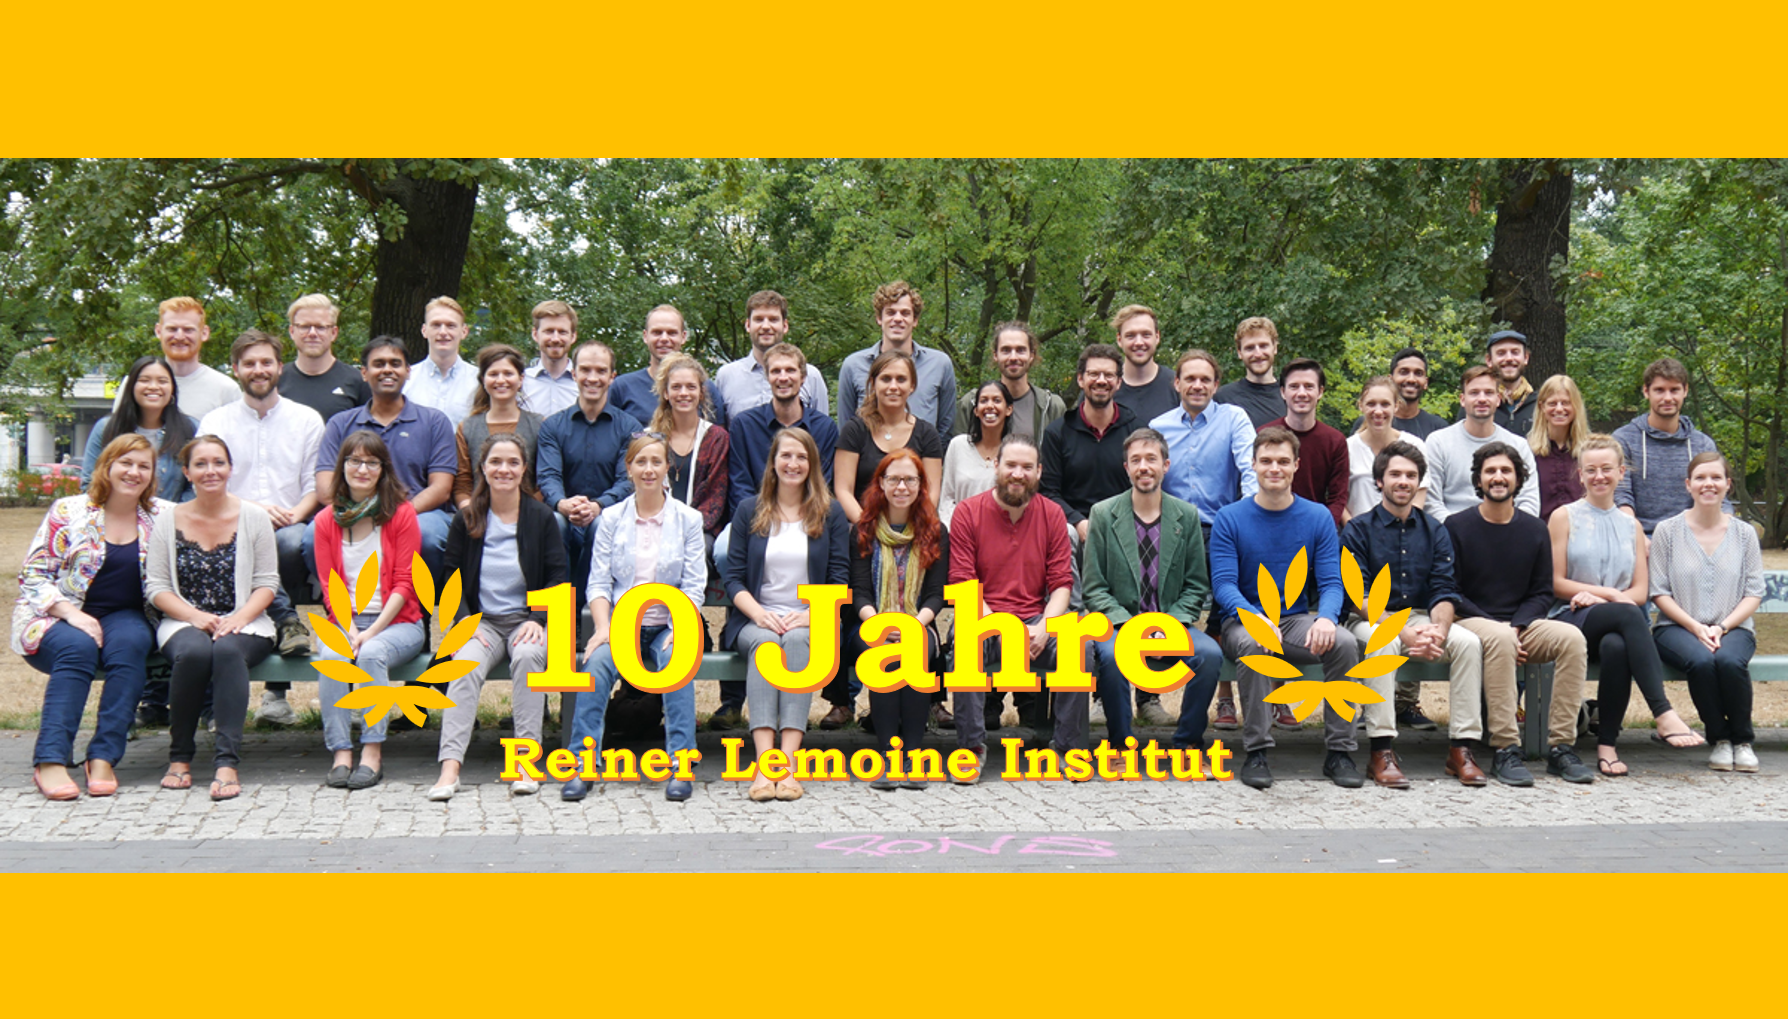 10 Jahre Reiner Lemoine Institut